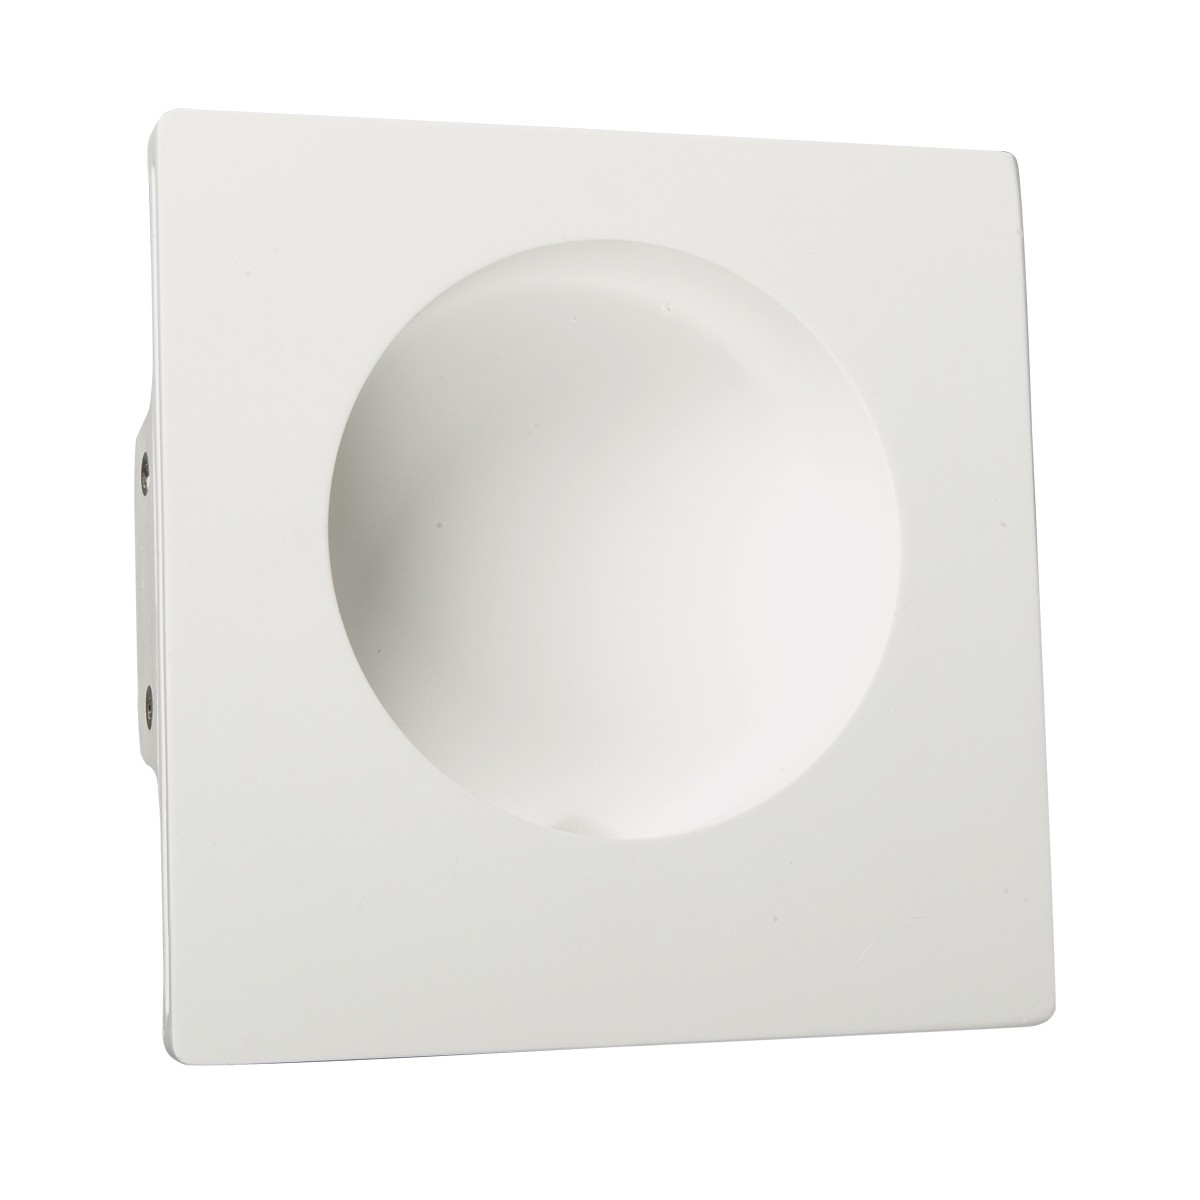 Φωτιστικό Τοίχου Γύψινο Led 1w Χωνευτό Λευκό Χρώμα        VK/09025